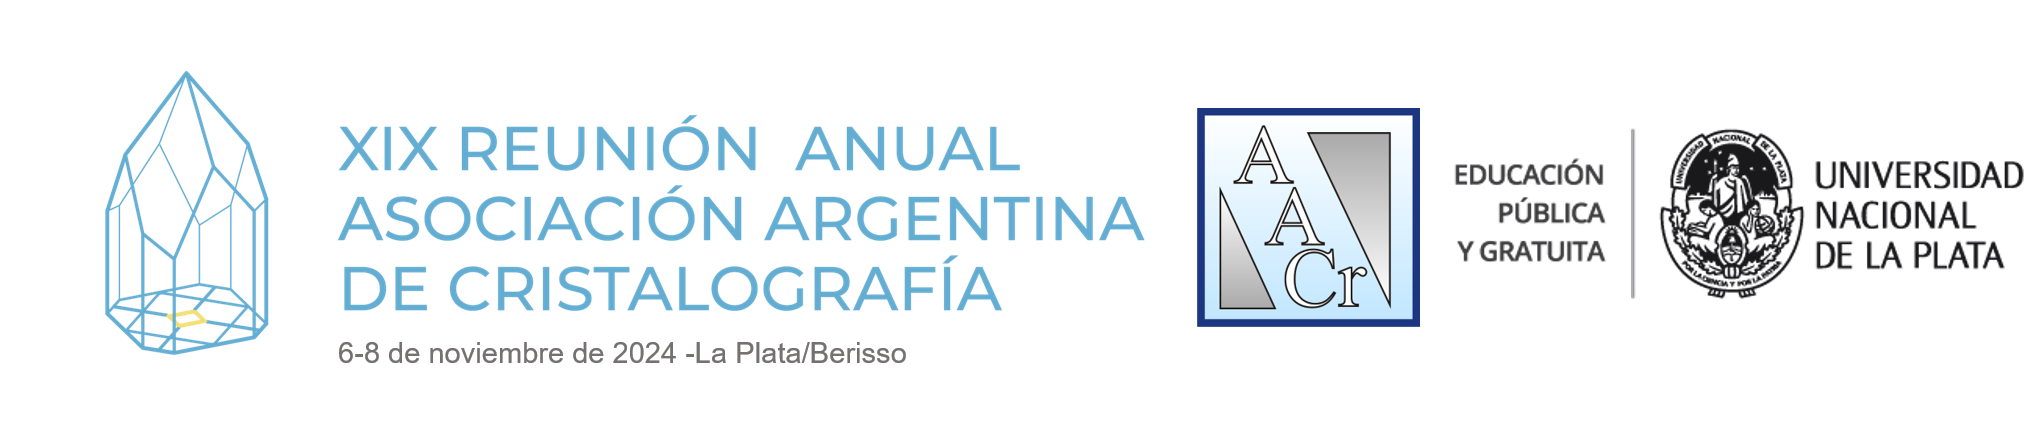 XIX Reunión Anual de la Asociación Argentina de Cristalografía Logo